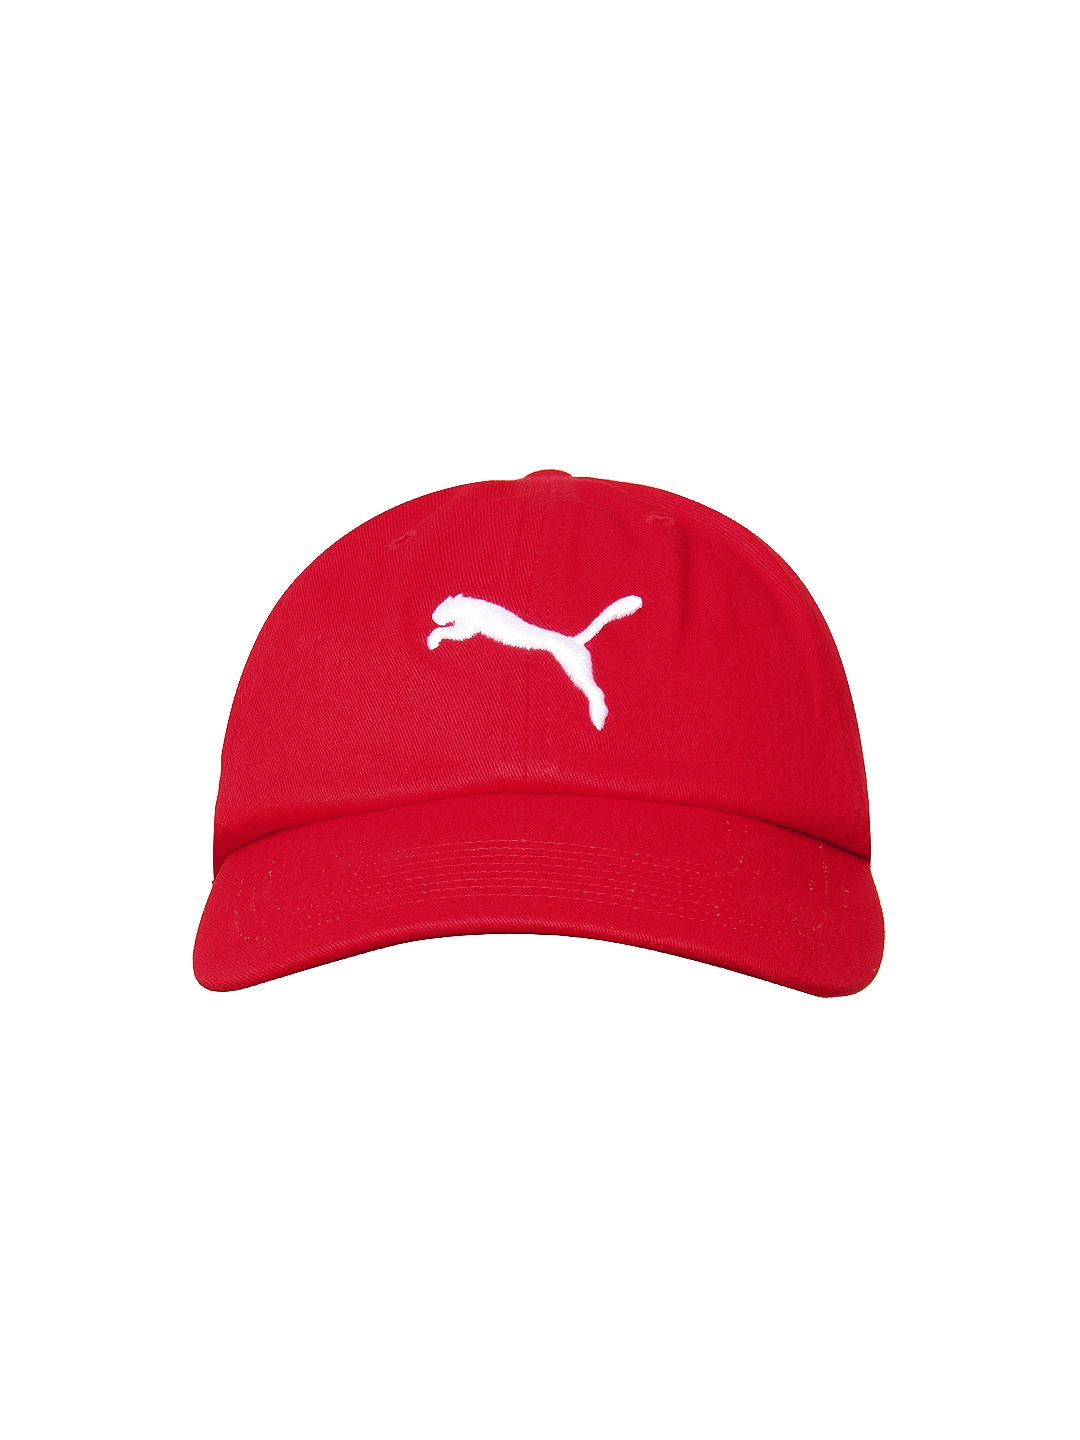 puma red caps